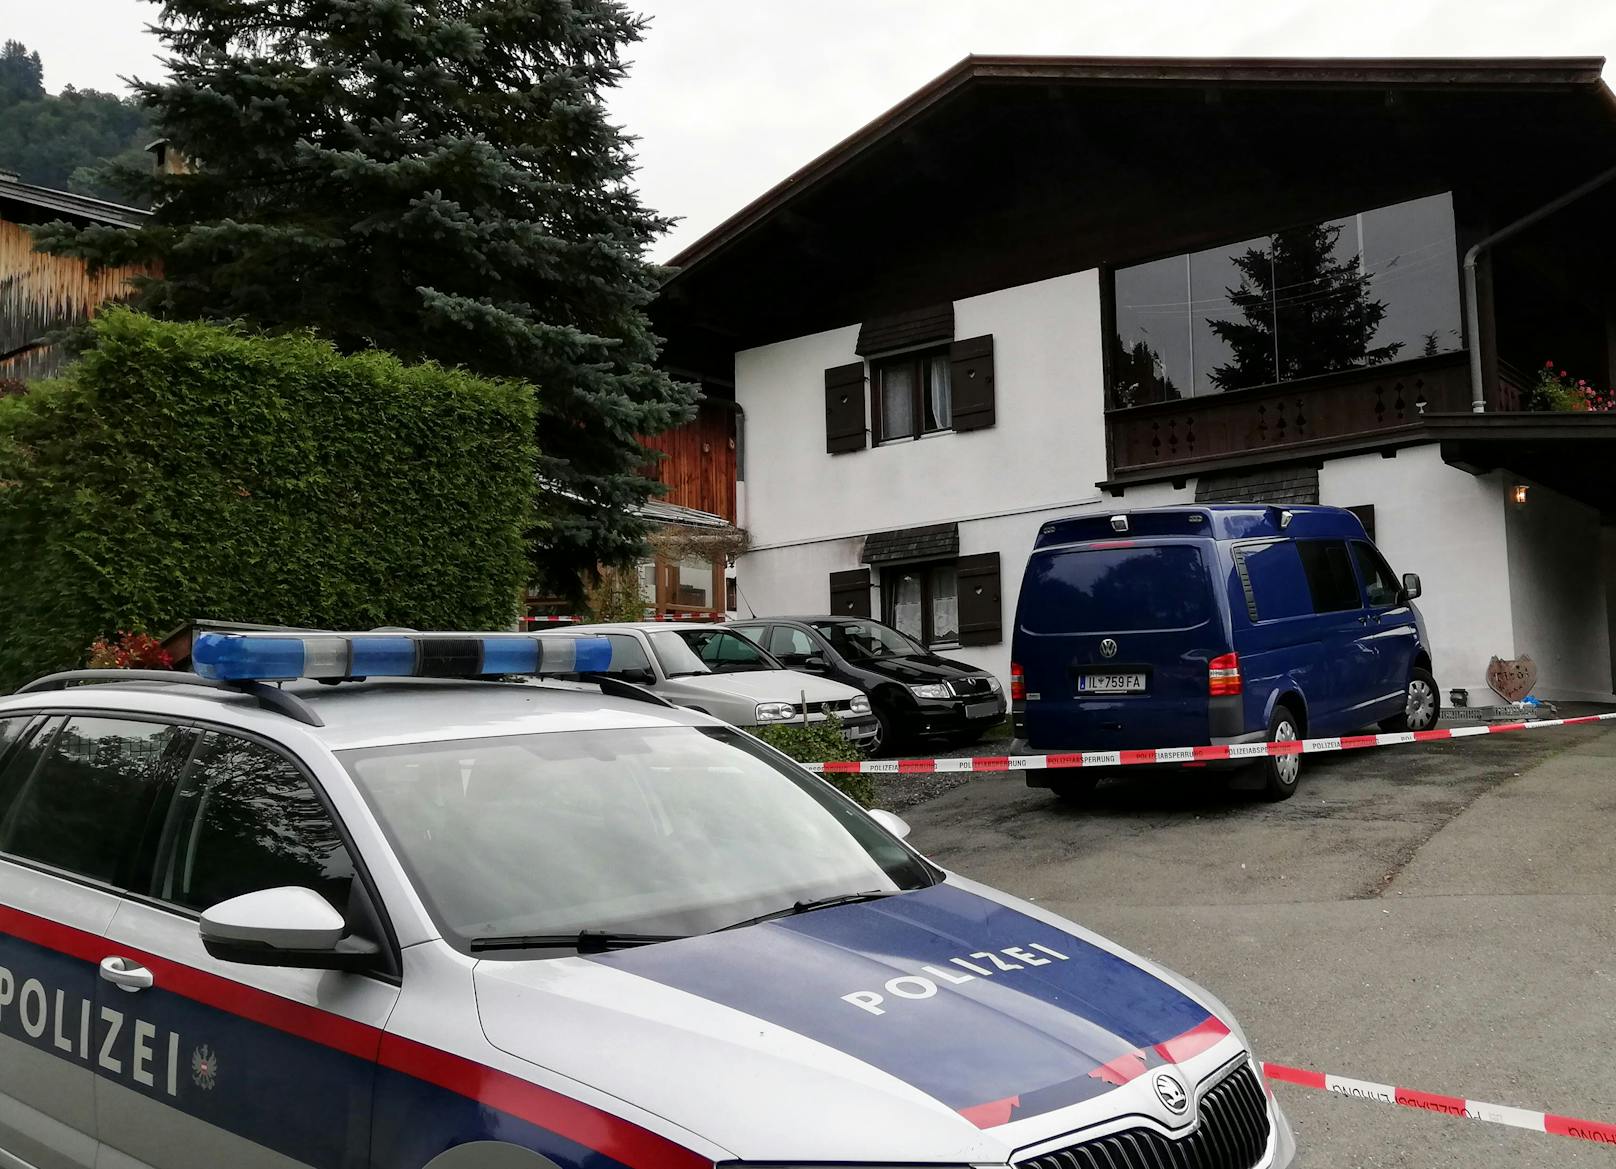 Anschließend fuhr der Andreas e. zur Polizeiinspektion Kitzbühel und stellte sich um 5.55 Uhr. Er übergab die Tatwaffe und teilte mit, das er soeben fünf Menschen erschossen habe.